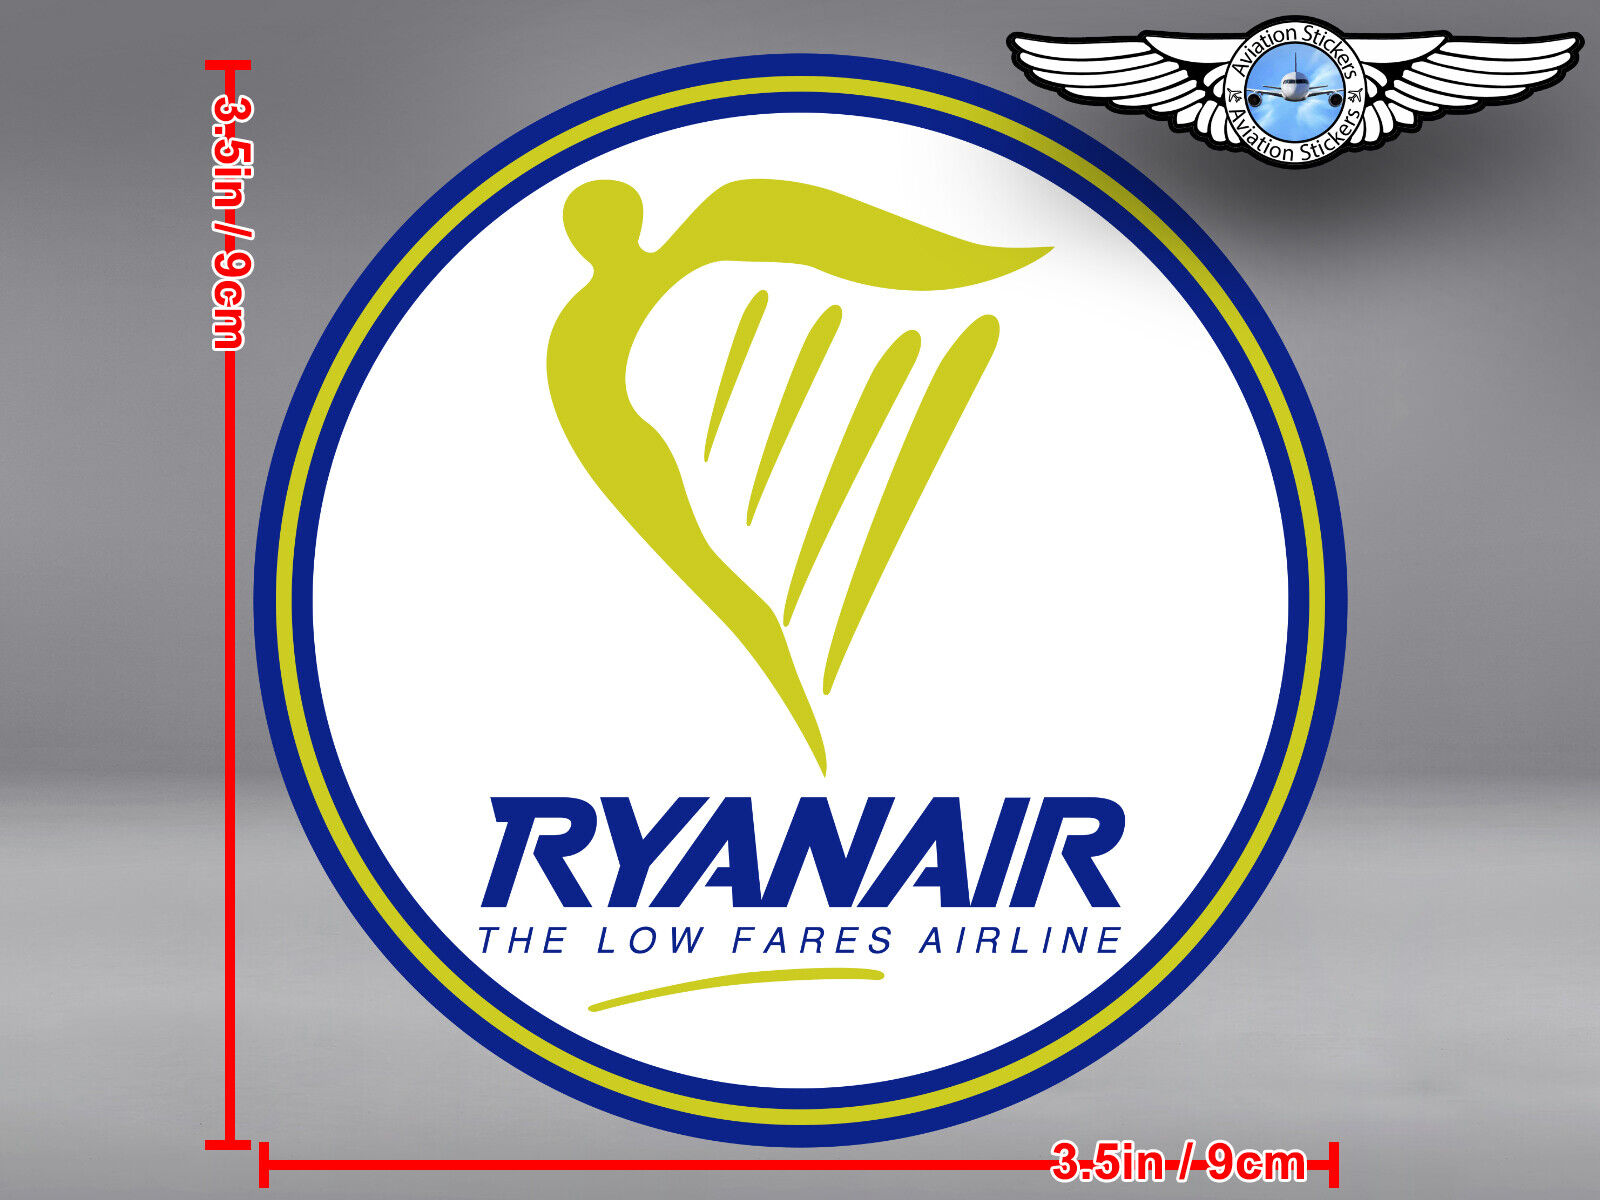 RYANAIR RYAN AIR LOGO ROUND DECAL / STICKER 